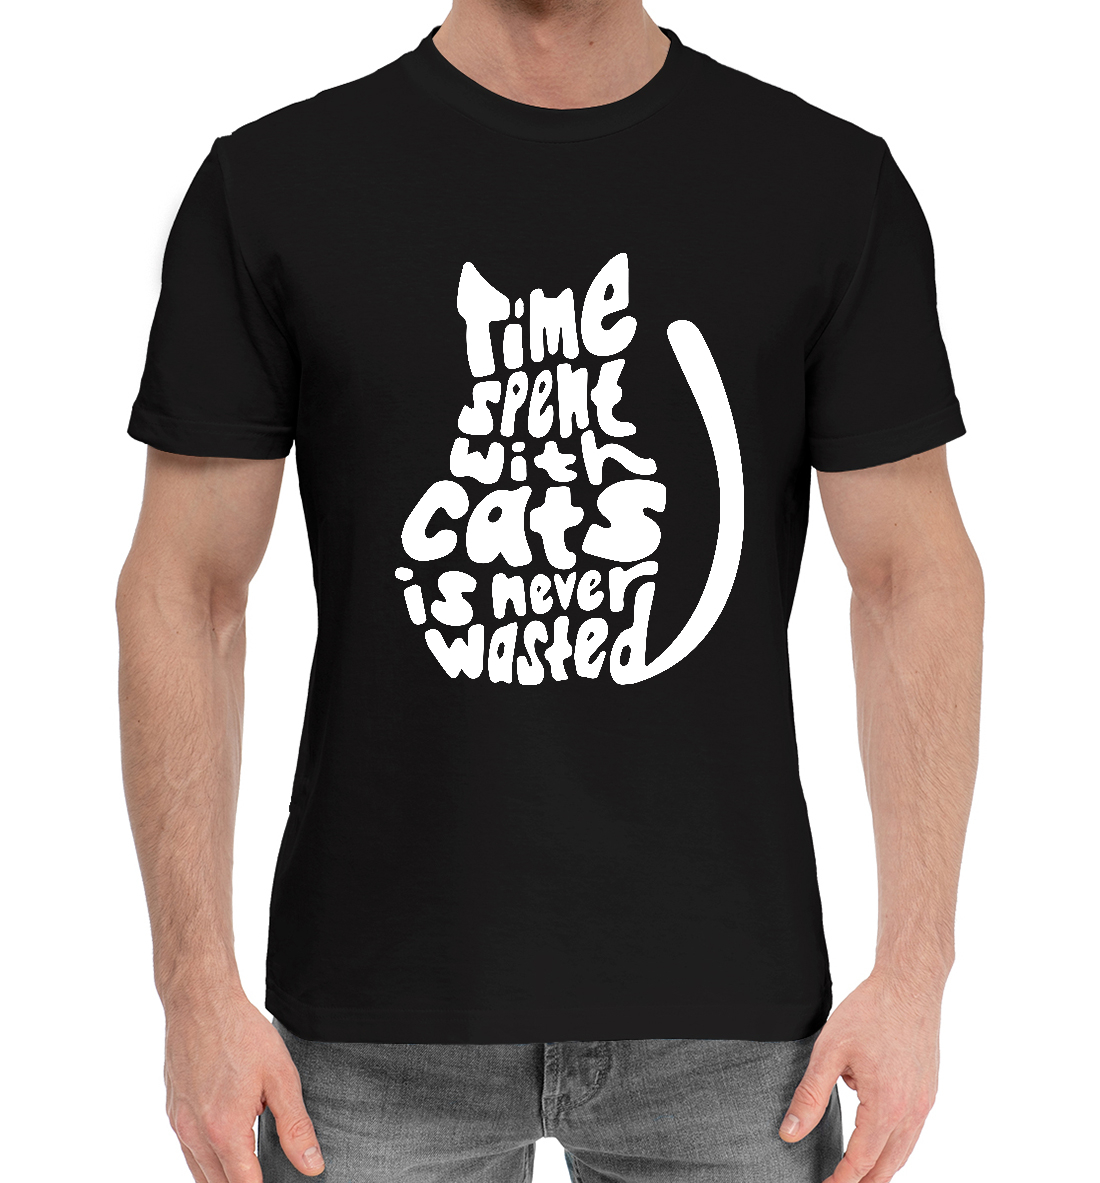 Мужская Хлопковая футболка с надписью Мудрые слова, артикул CAT-199177-hfu-2mp